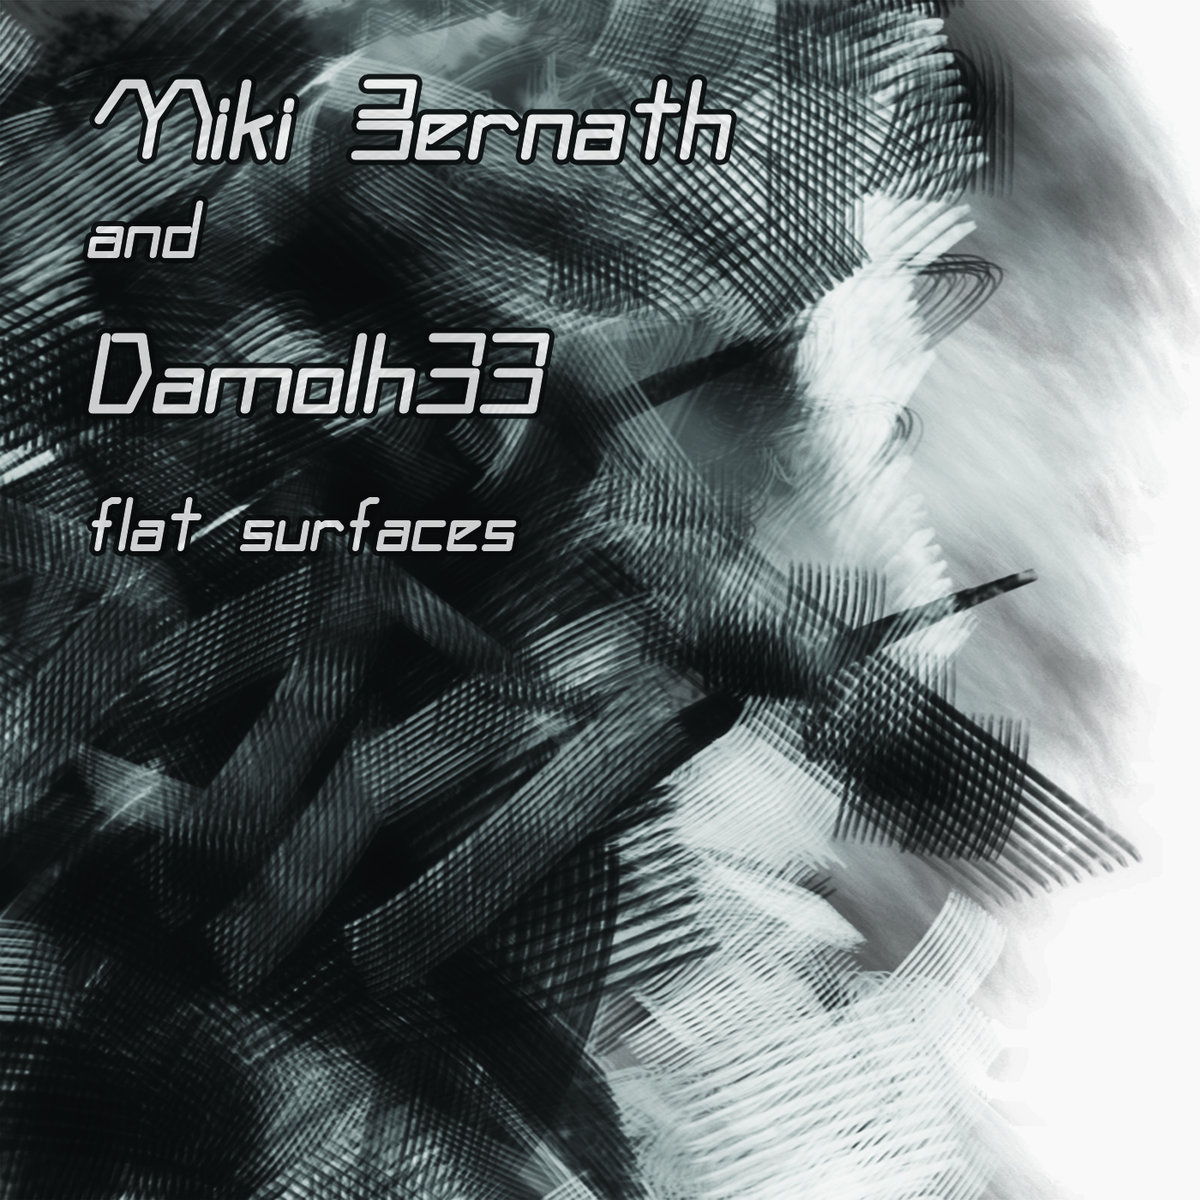 Miki Bernath & Damolh33 -Flat Surfaces / Tape